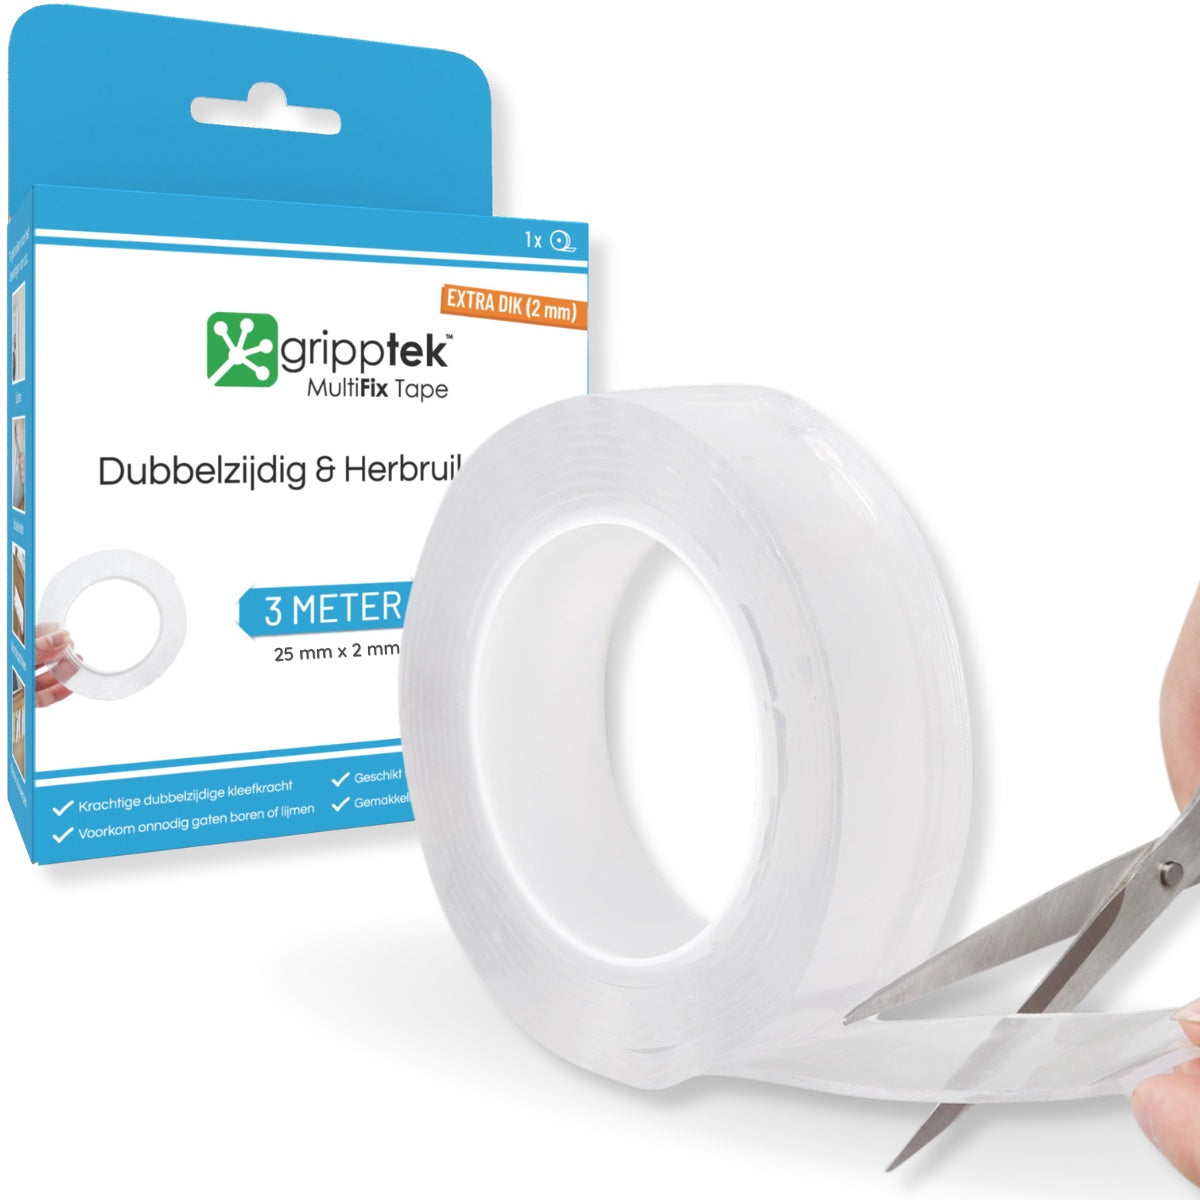 GrippTek® MultiFix Tape Original 2.0 - Dubbelzijdig & Herbruikbaar